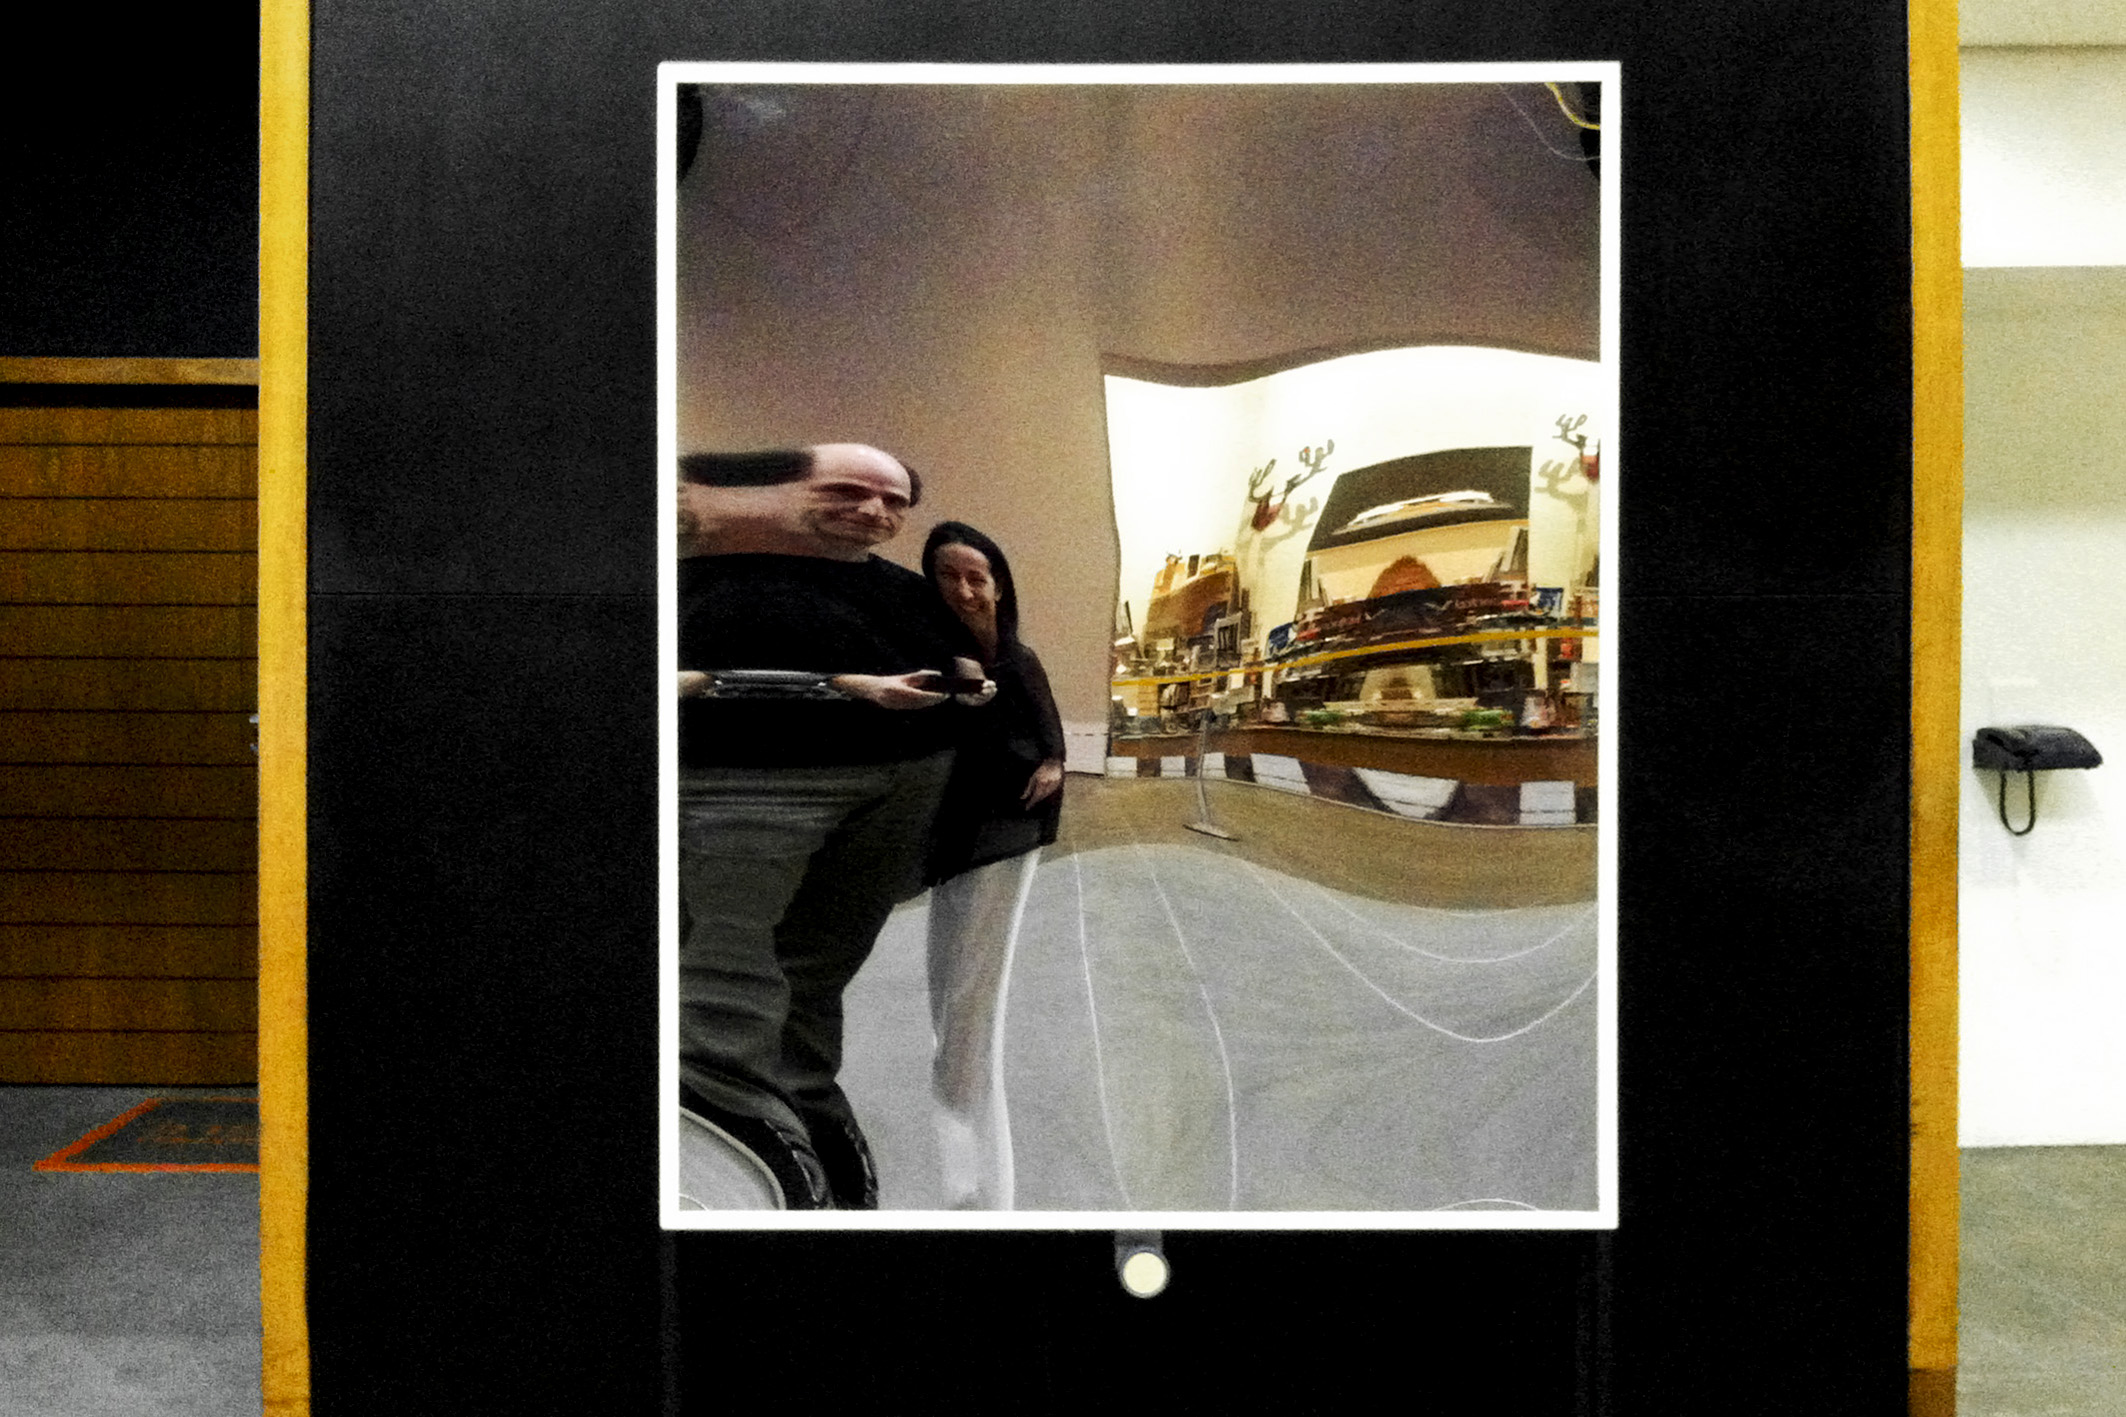    mirror | espelho    @ III mostra 3m 2012   + expo  